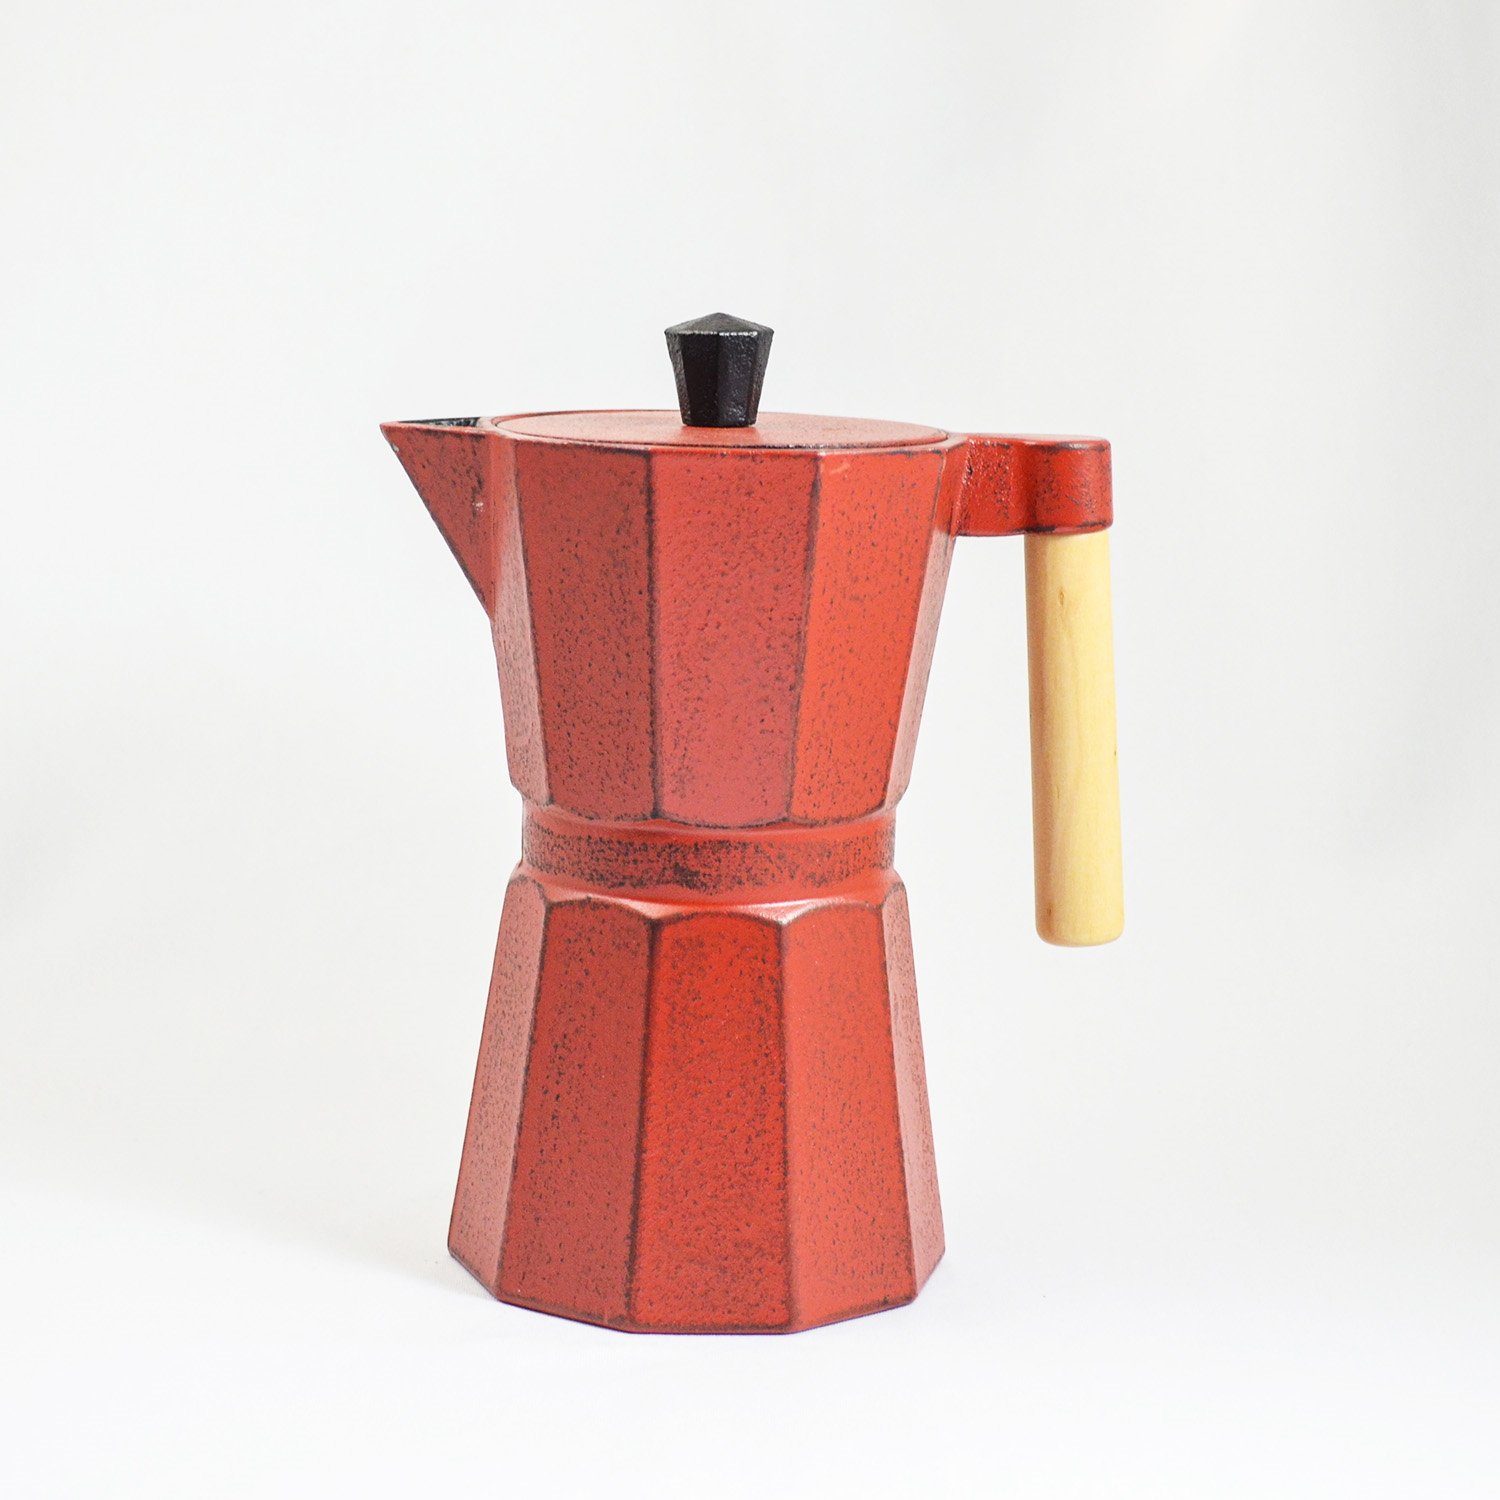 JA-UNENDLICH Teekanne Kafei, 0.8 l, rot im Sandgussverfahren, handgefertigt aus innen emailliert Gusseisen